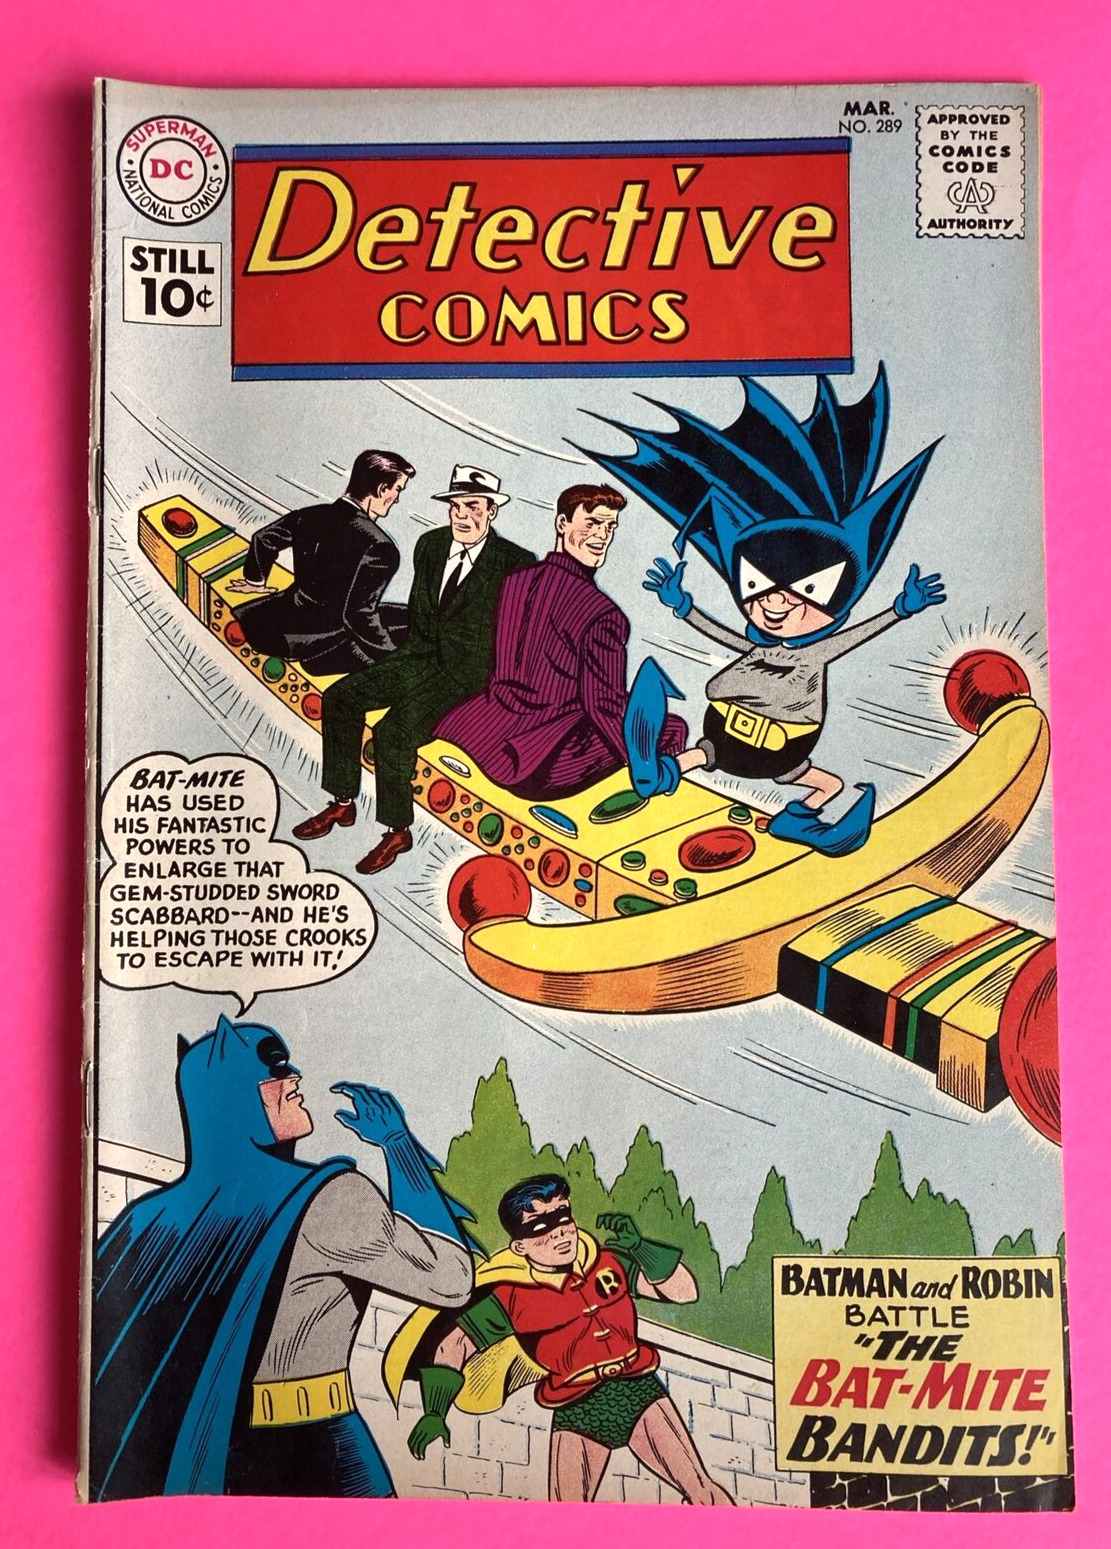 DC Comics - DETECTIVE COMICS - No. 289 - 1961